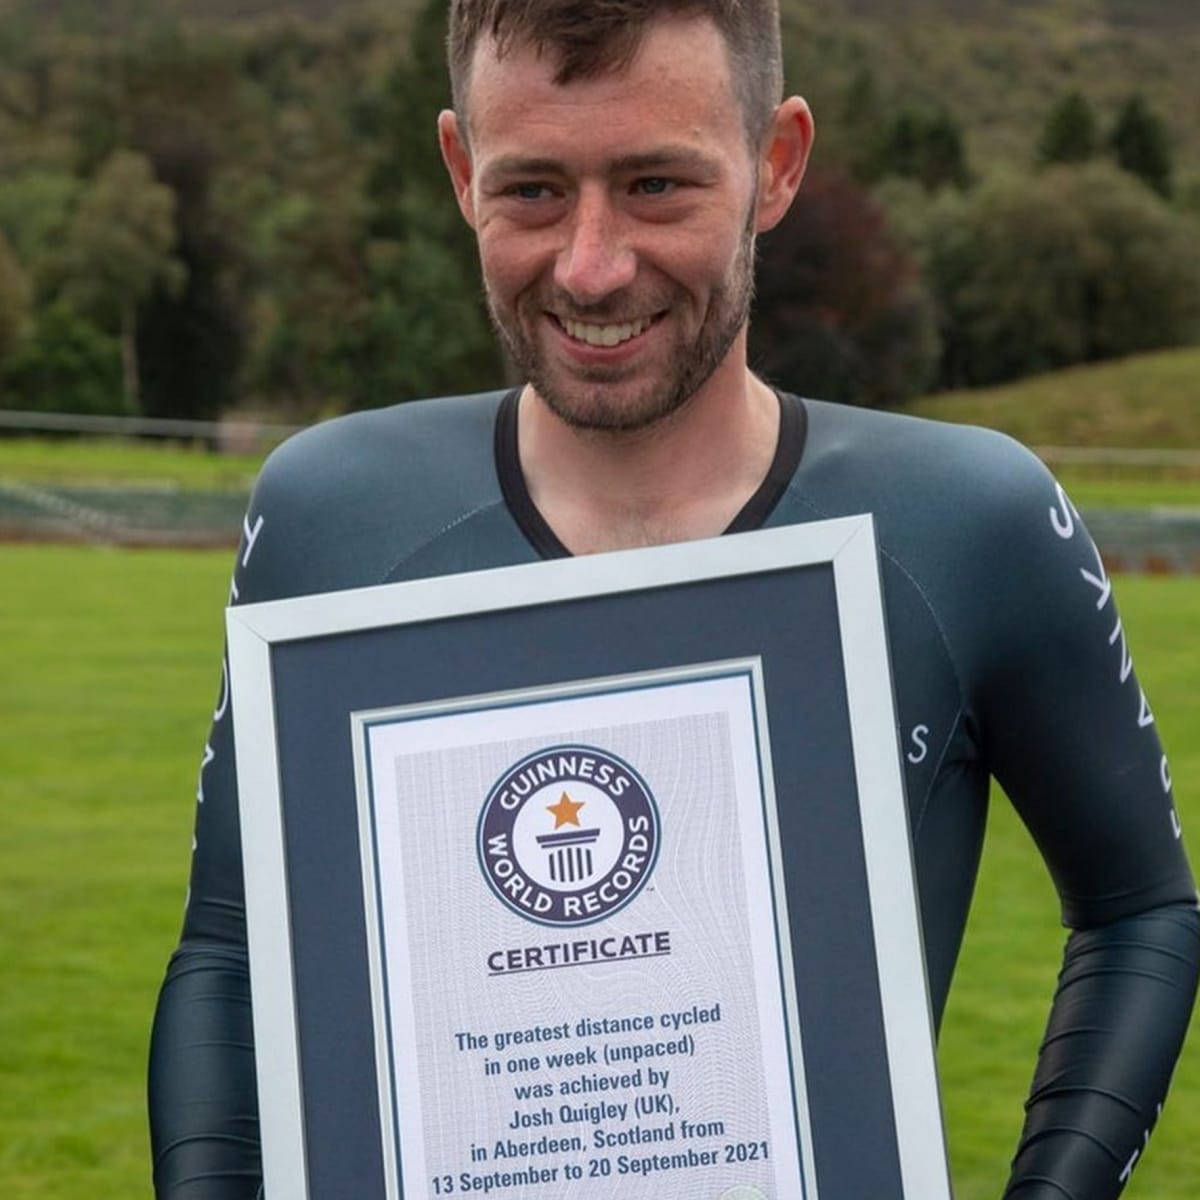 Na konci letošního září pak Josh Quigley nový světový rekord skutečně vytvořil. Má hodnotu 3508 km za týden a znamenal i zápis do Guinnessovy knihy rekordů.